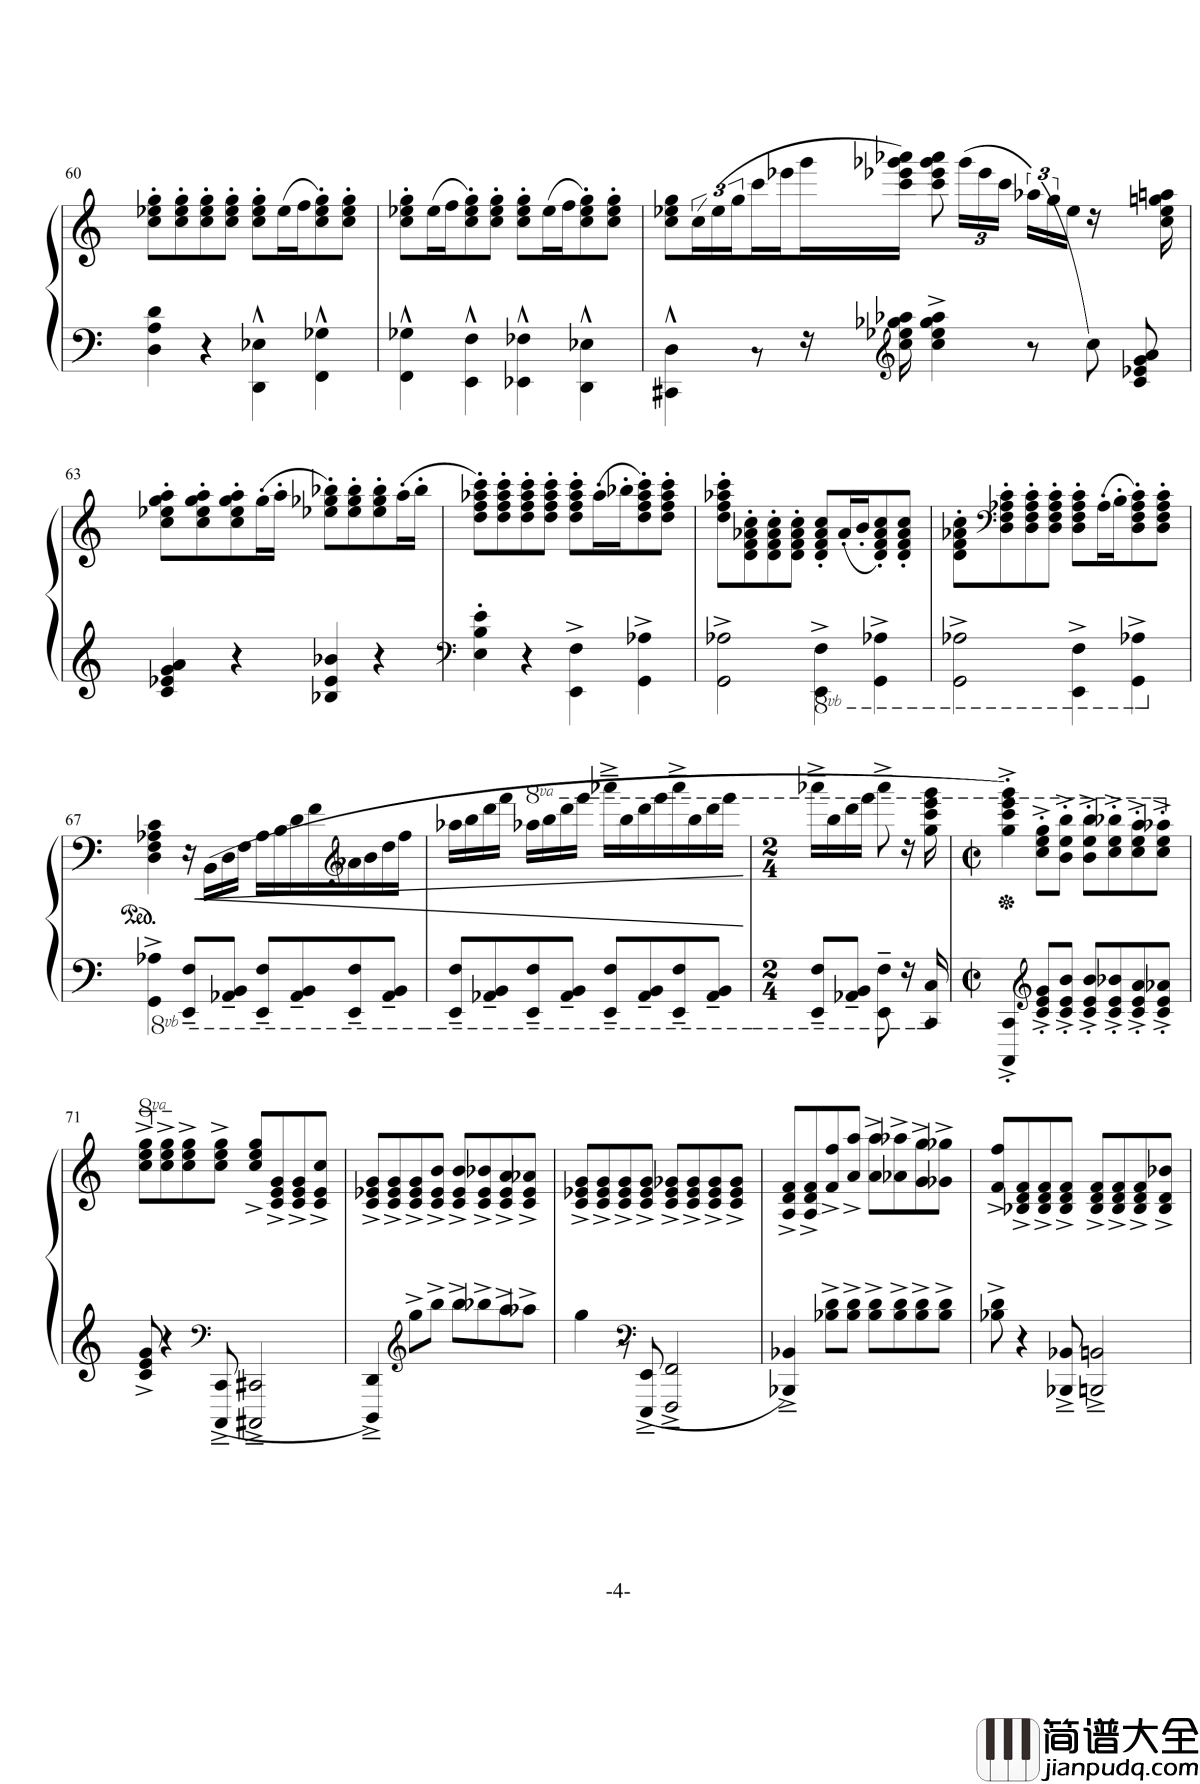 普罗科菲耶夫四首小品之四：魔鬼的诱惑钢琴谱_普罗科非耶夫